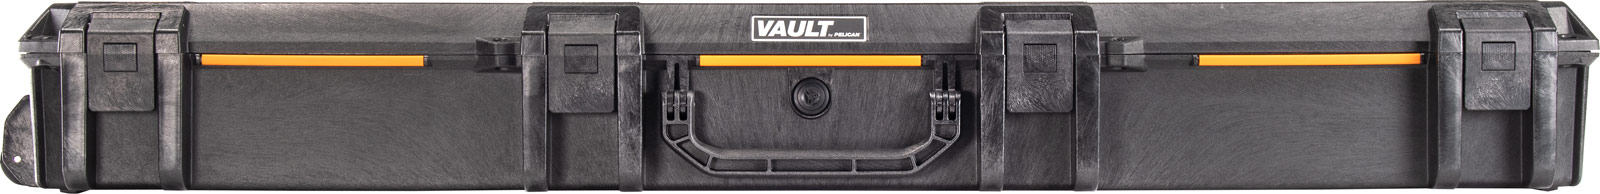 pelican vault v800 long hard case